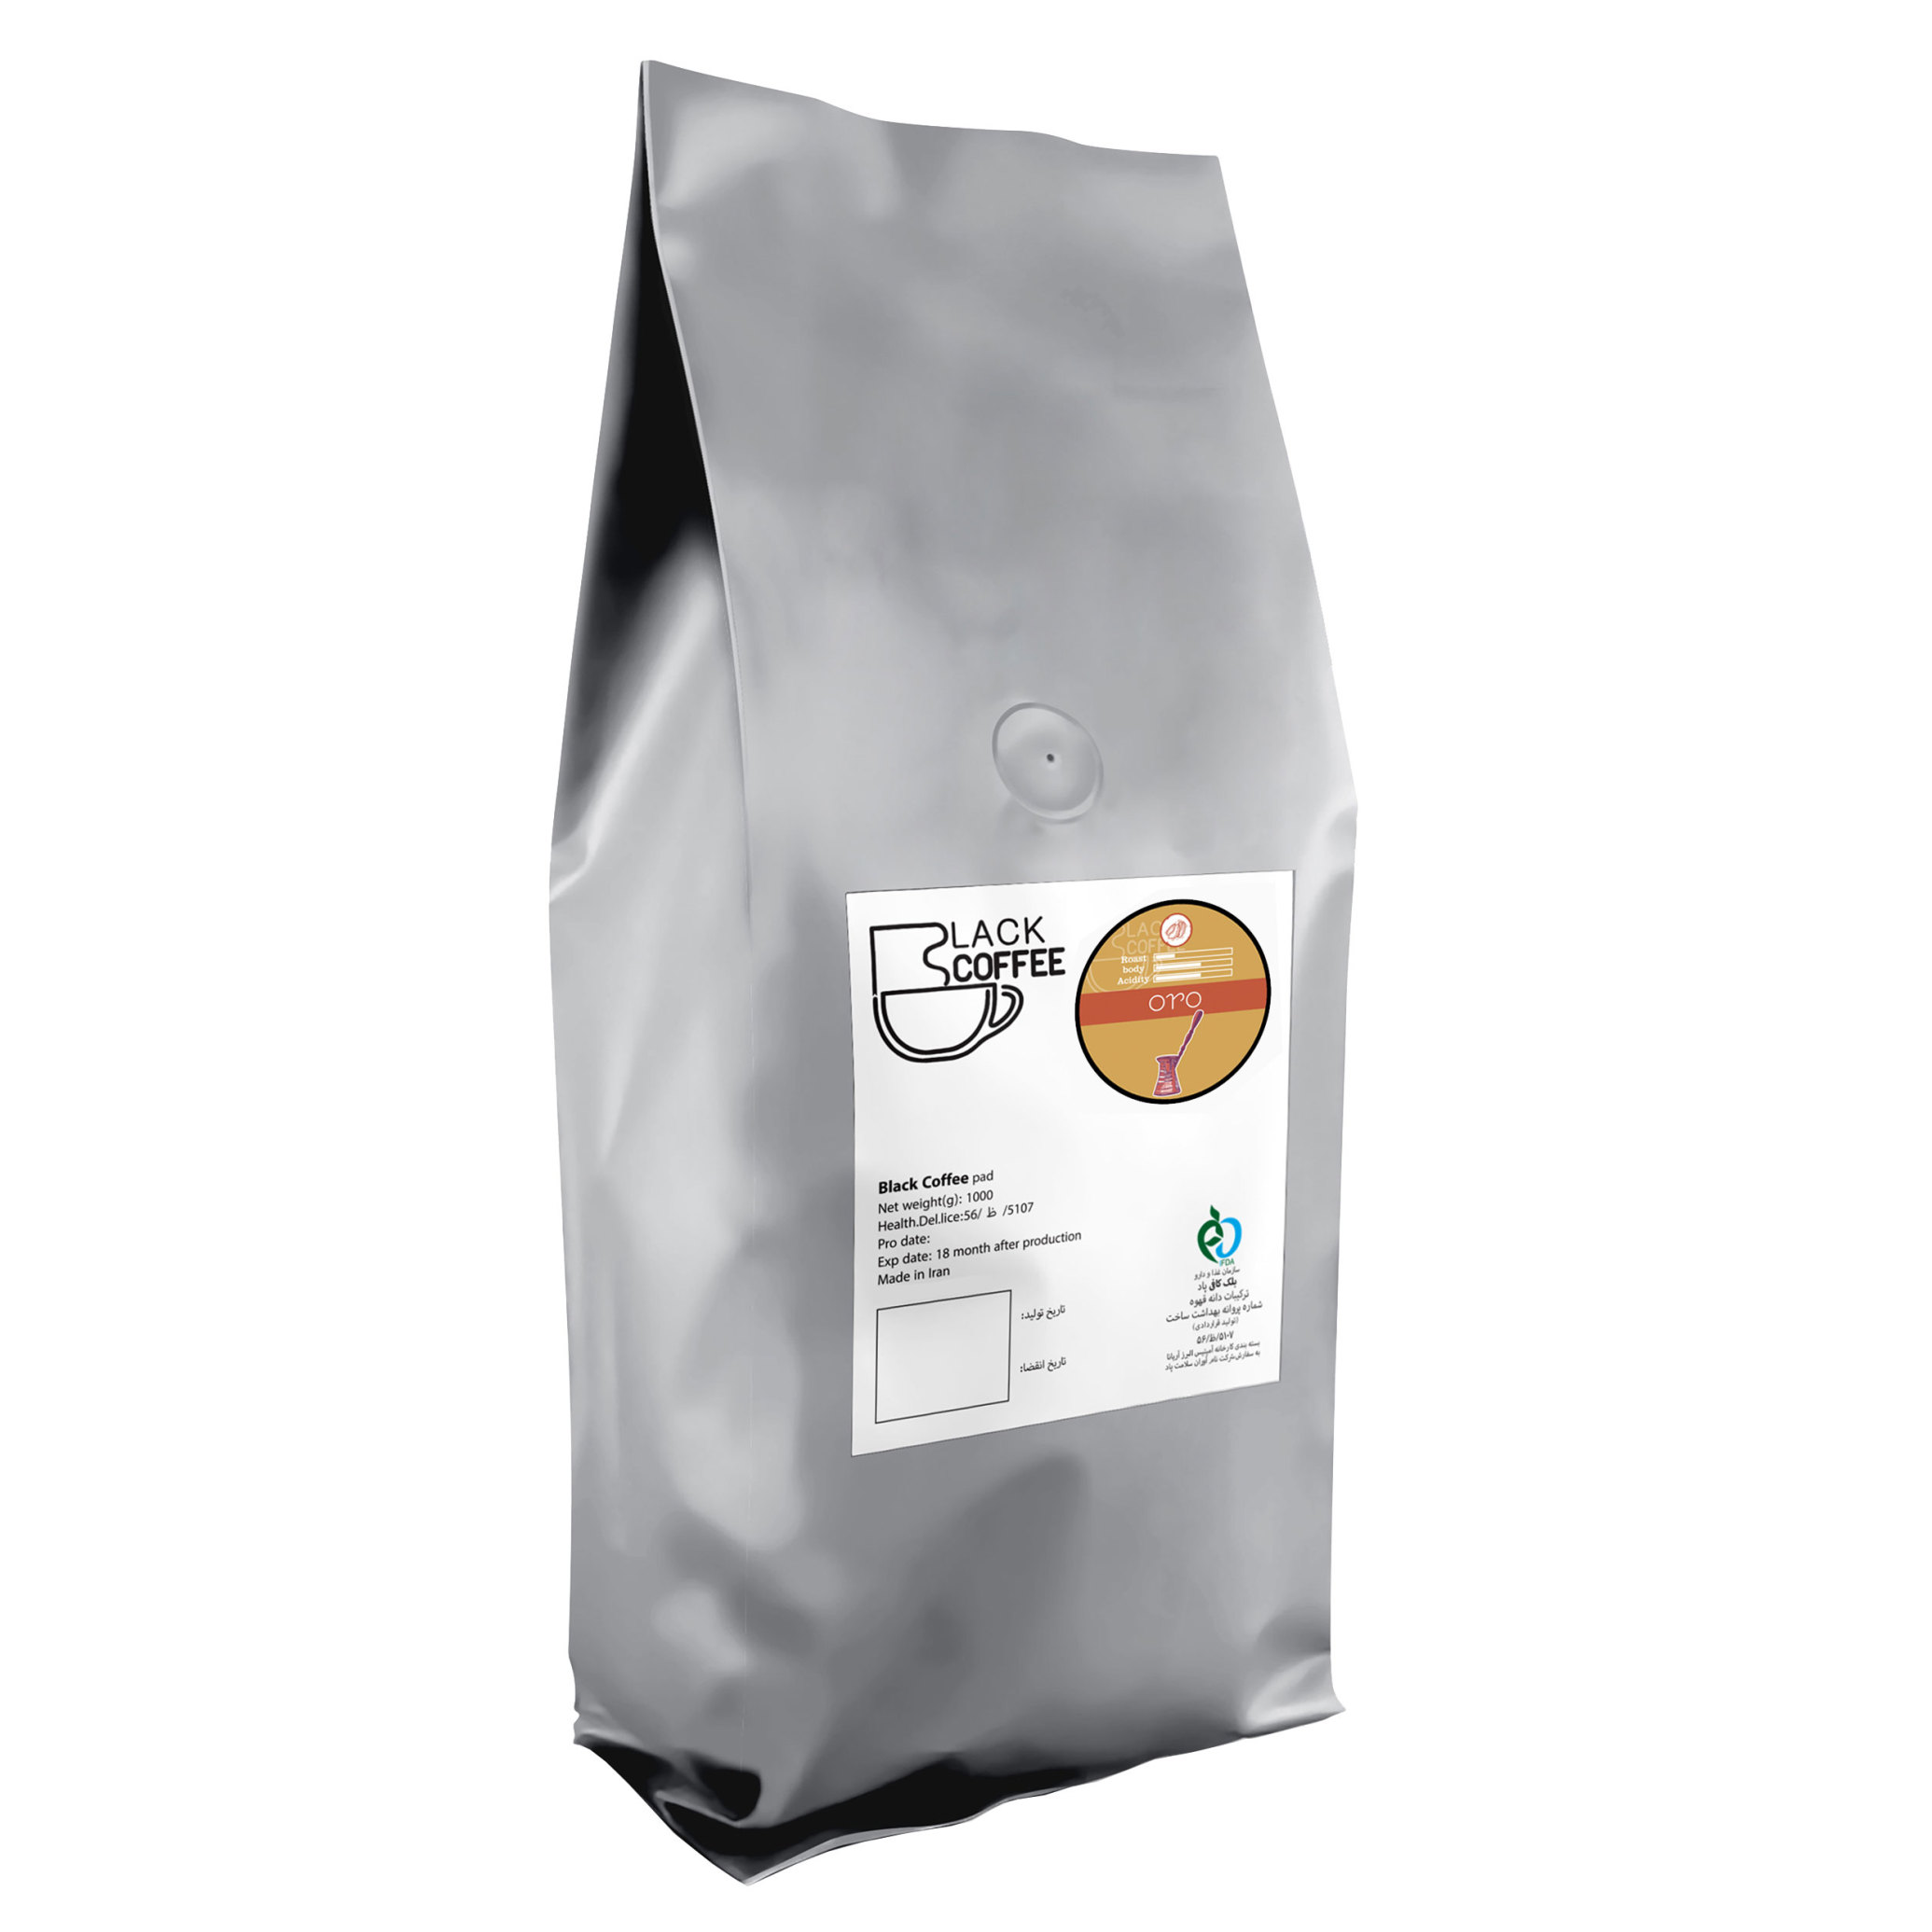  دانه قهوه ارو- ۱ کیلوگرم Oro Coffee beans |بلک کافی | دانه قهوه 